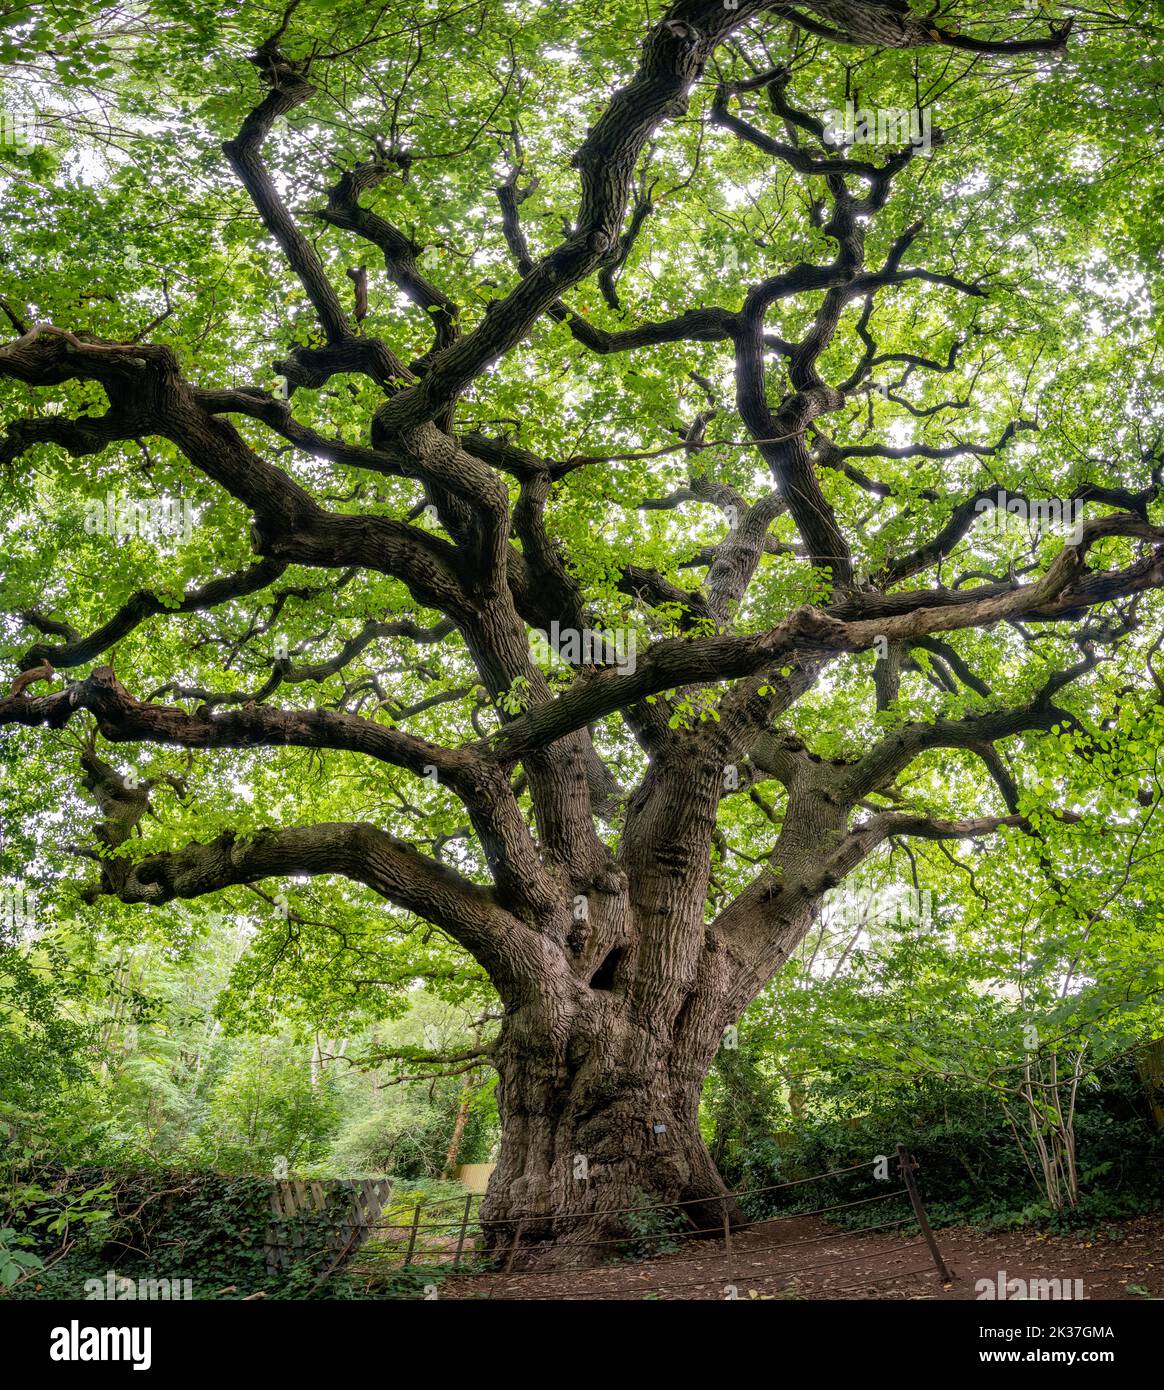 El Knoll Hill Oak Un viejo árbol de Quercus petraea de roble sésile en los bosques de Bishop's Knoll sobre el Avon Gorge y el más grande de Bristol con una circunferencia de 7 metros Foto de stock